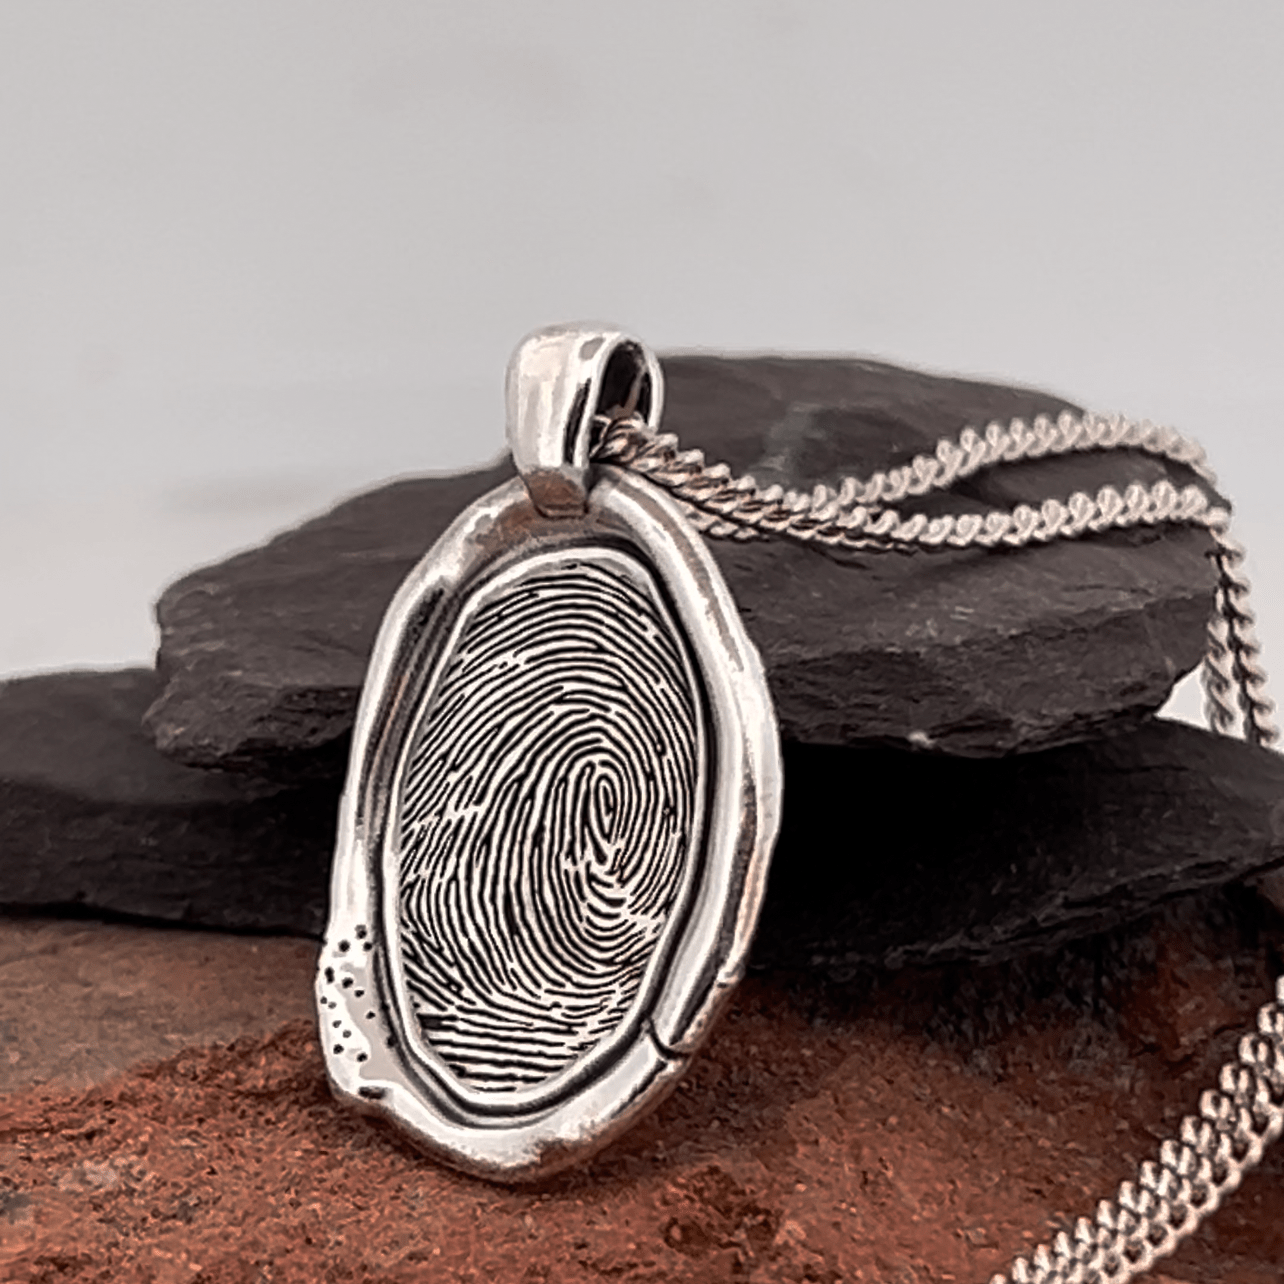 Fingerprint Necklace | Rustic Oval Pendant Pendant by Chris Parry Jewellery